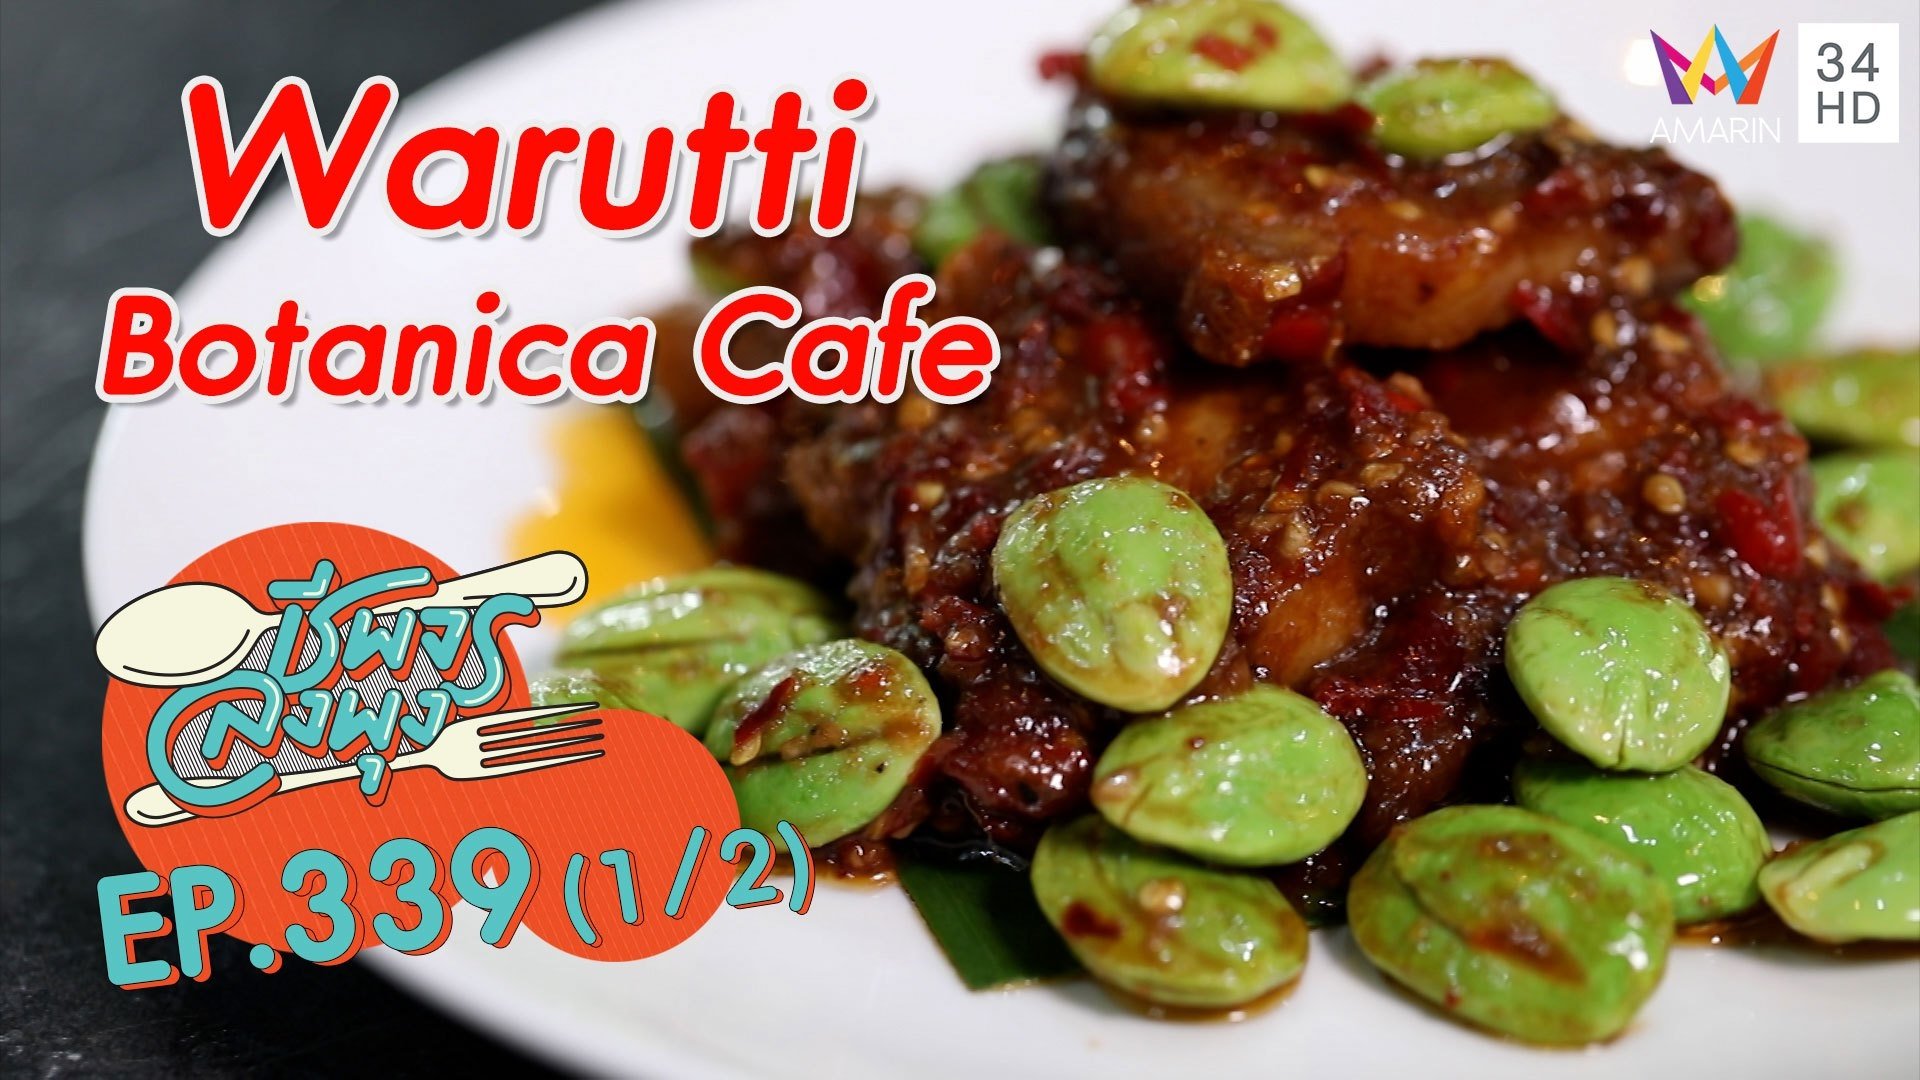 อาหารไทยแท้ๆ รสชาติเยี่ยม @ ร้าน Warutti Botanica Cafe | ชีพจรลงพุง | 6 พ.ย. 64 (1/2) | AMARIN TVHD34